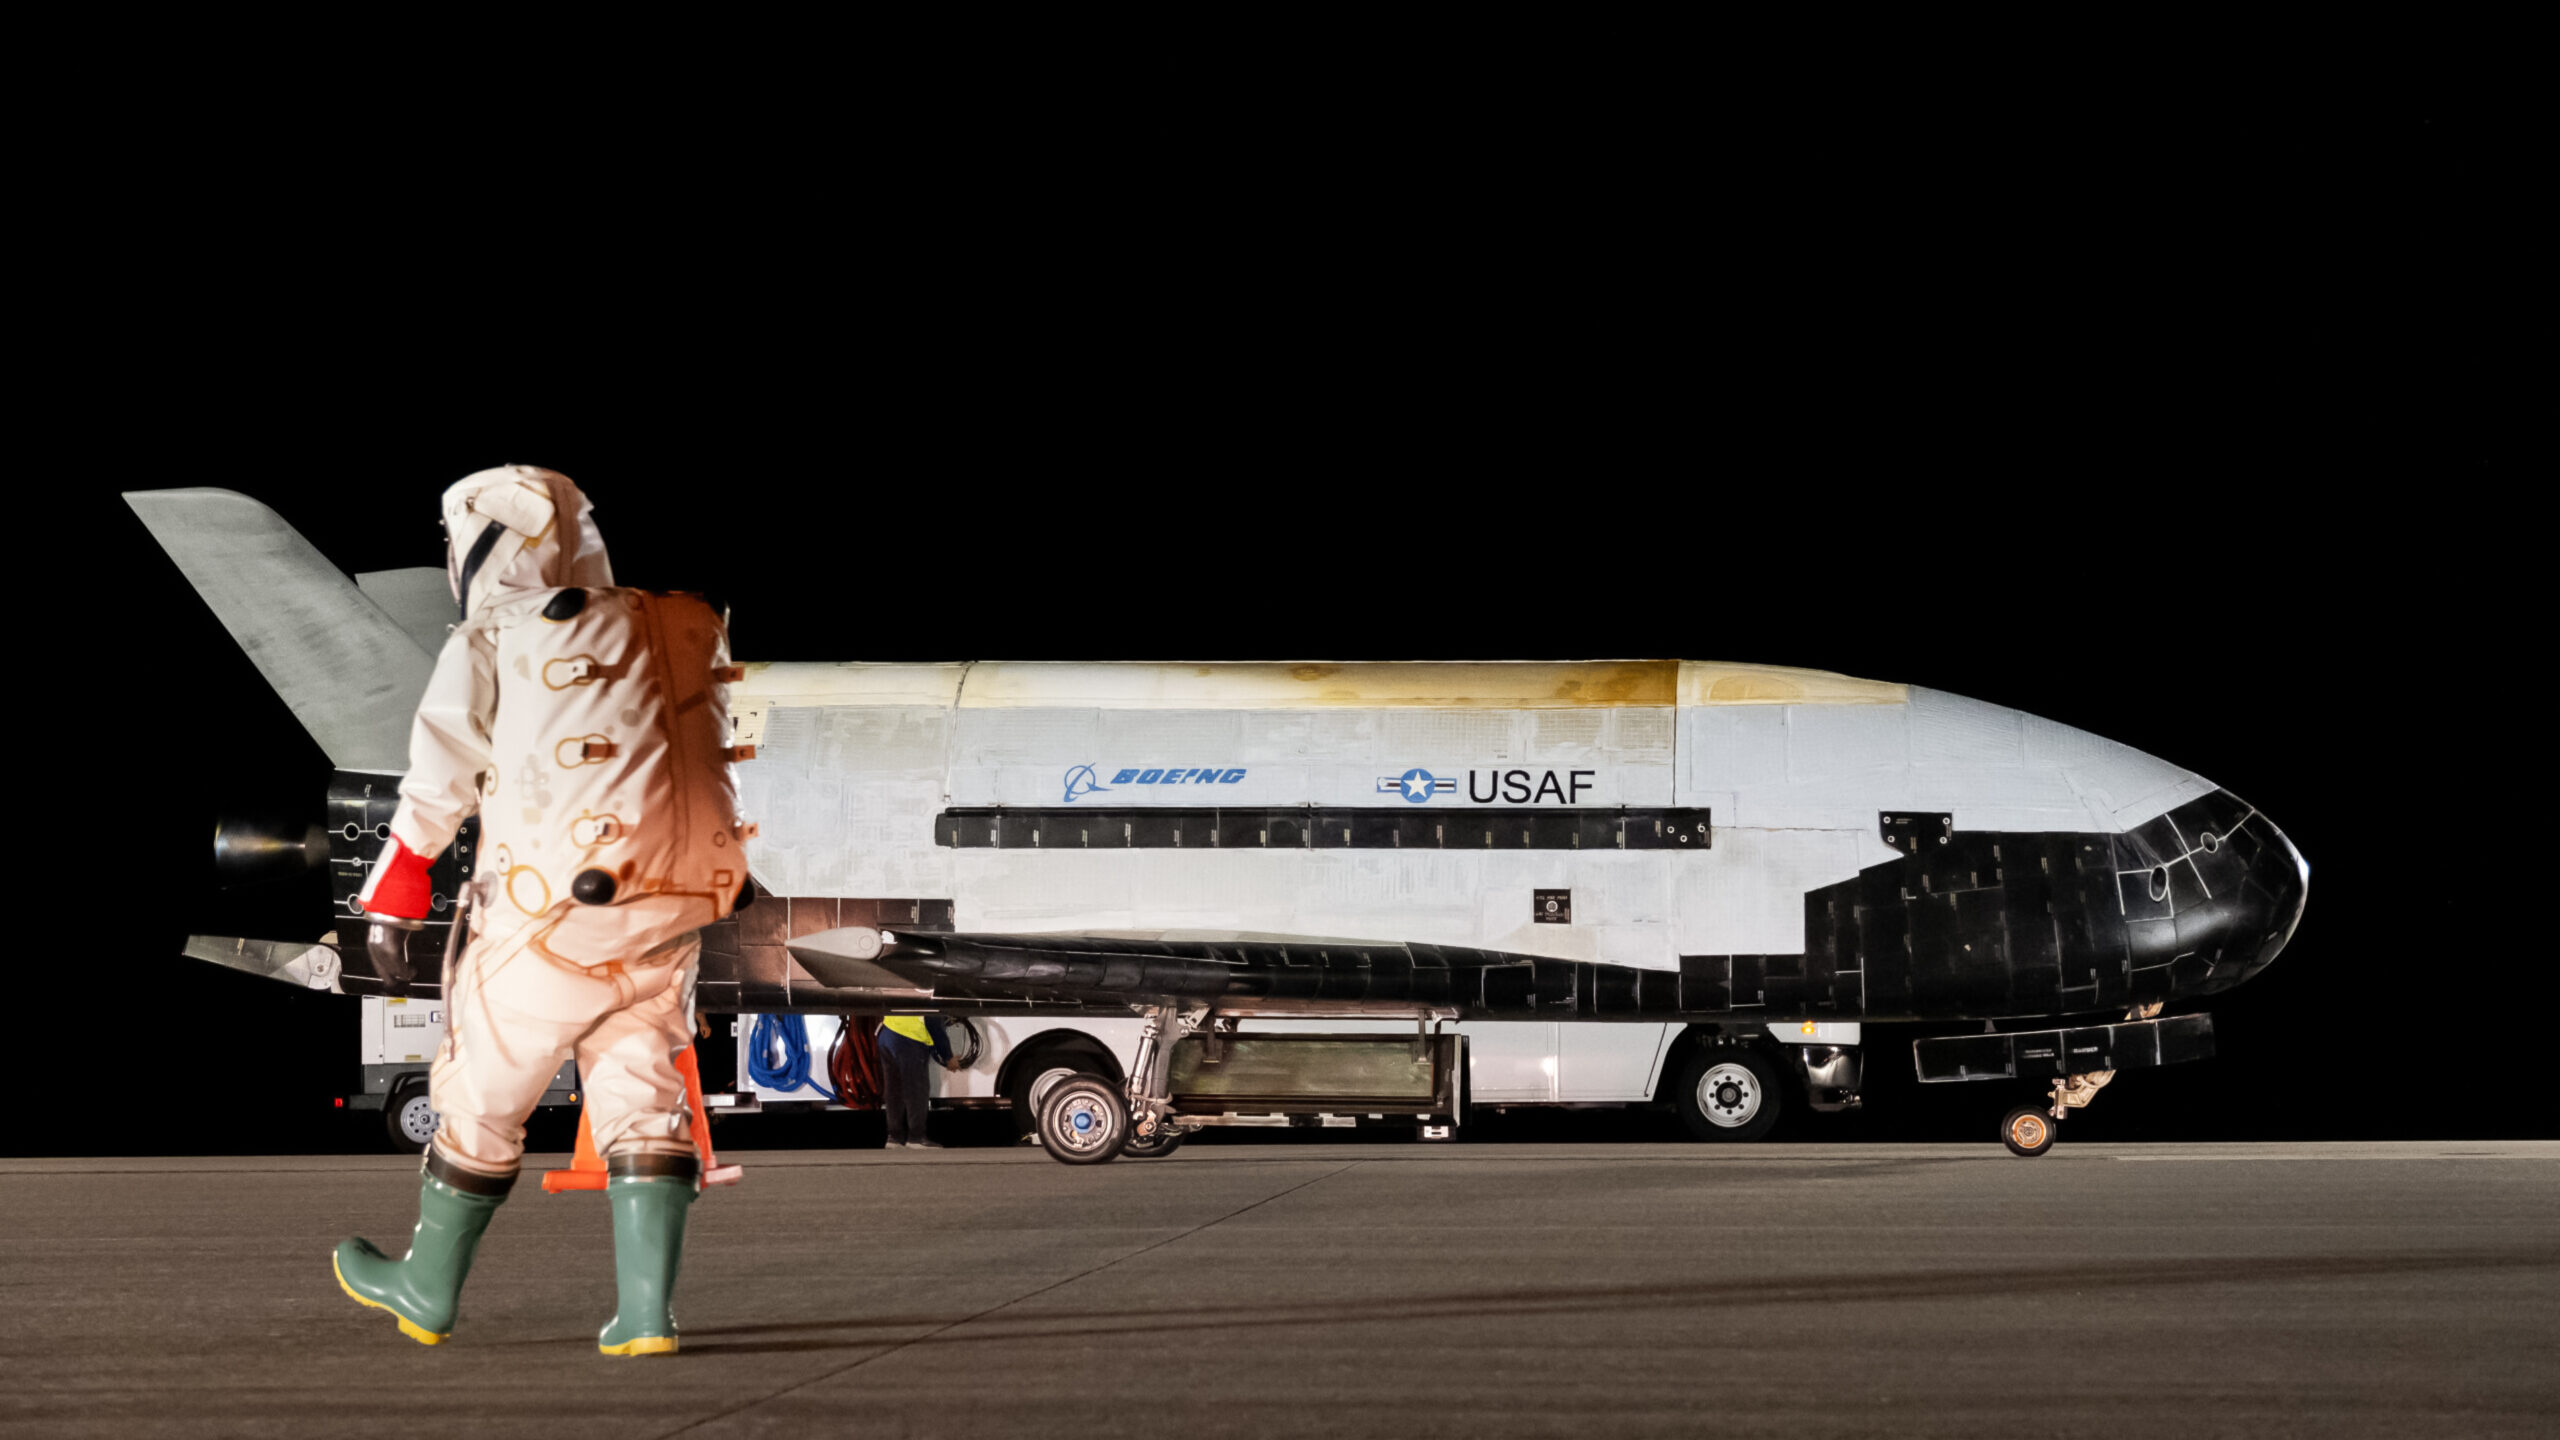 Nuevas imágenes filtradas: así es el transbordador espacial militar secreto de EE.UU.